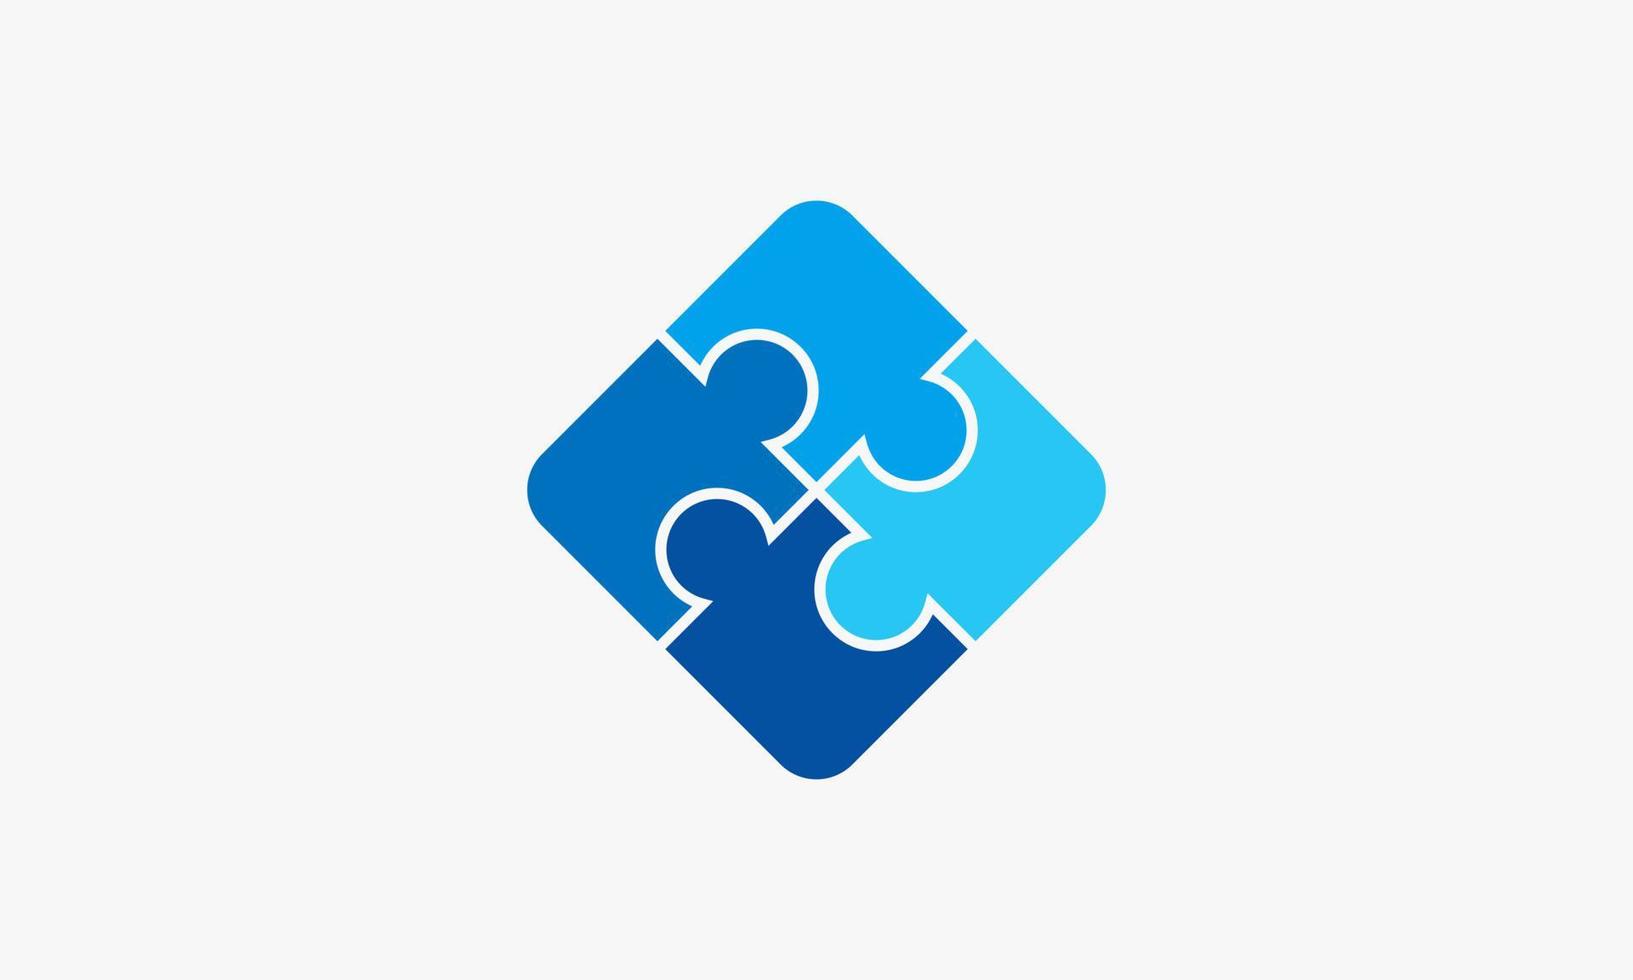 logotipo do quebra-cabeça azul. ilustração em vetor design gráfico.